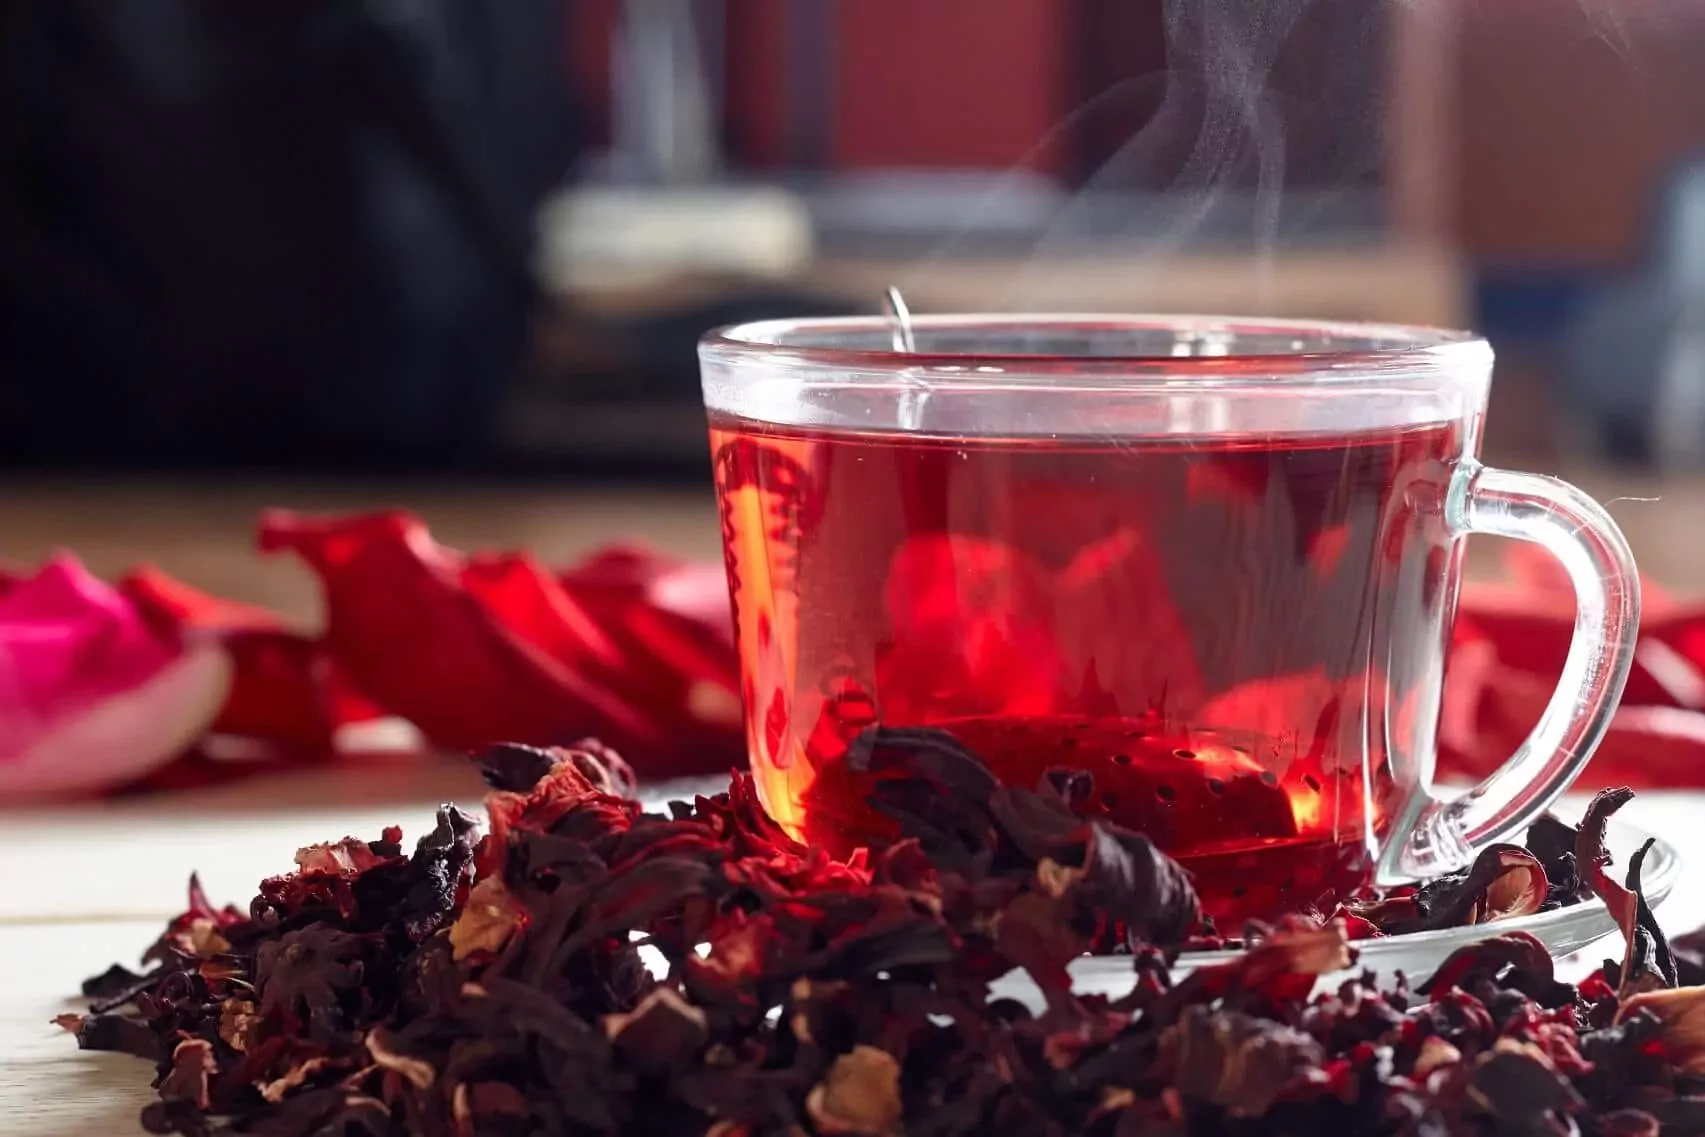 Raudonoji rooibos arbata - nauda ir poveikis sveikatai